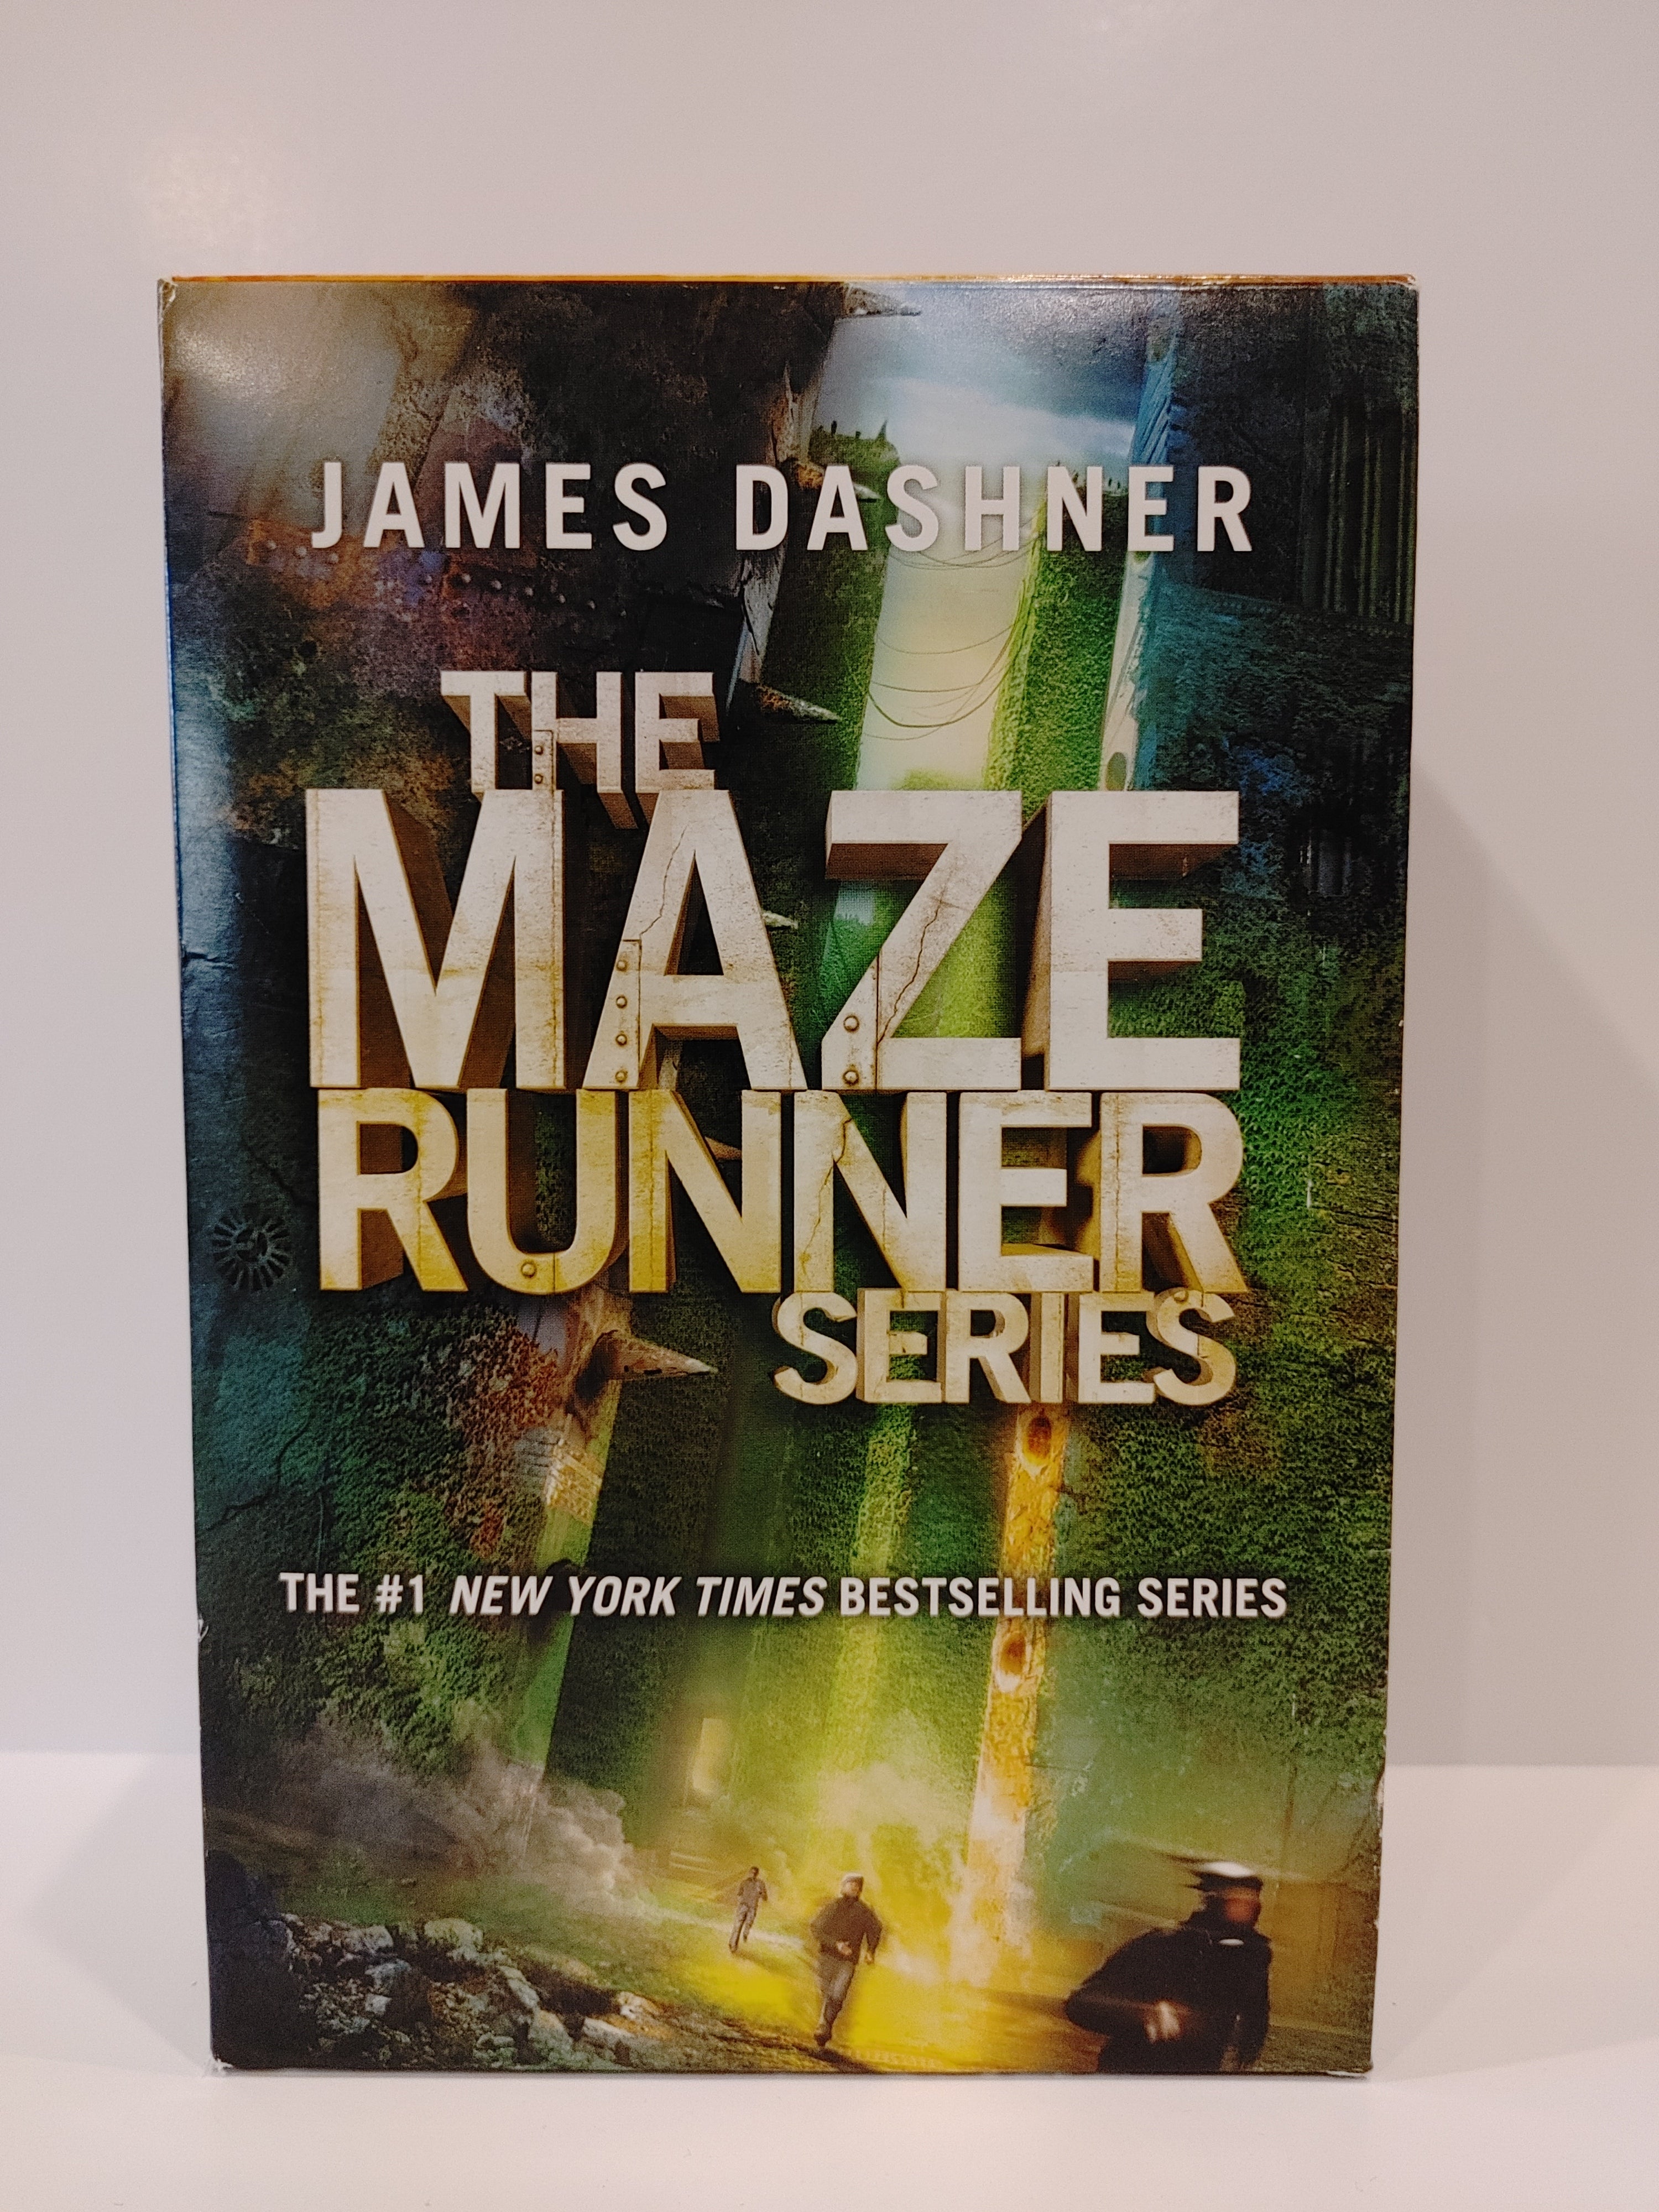 The Maze Runner (The Maze Runner, #1) by James Dashner